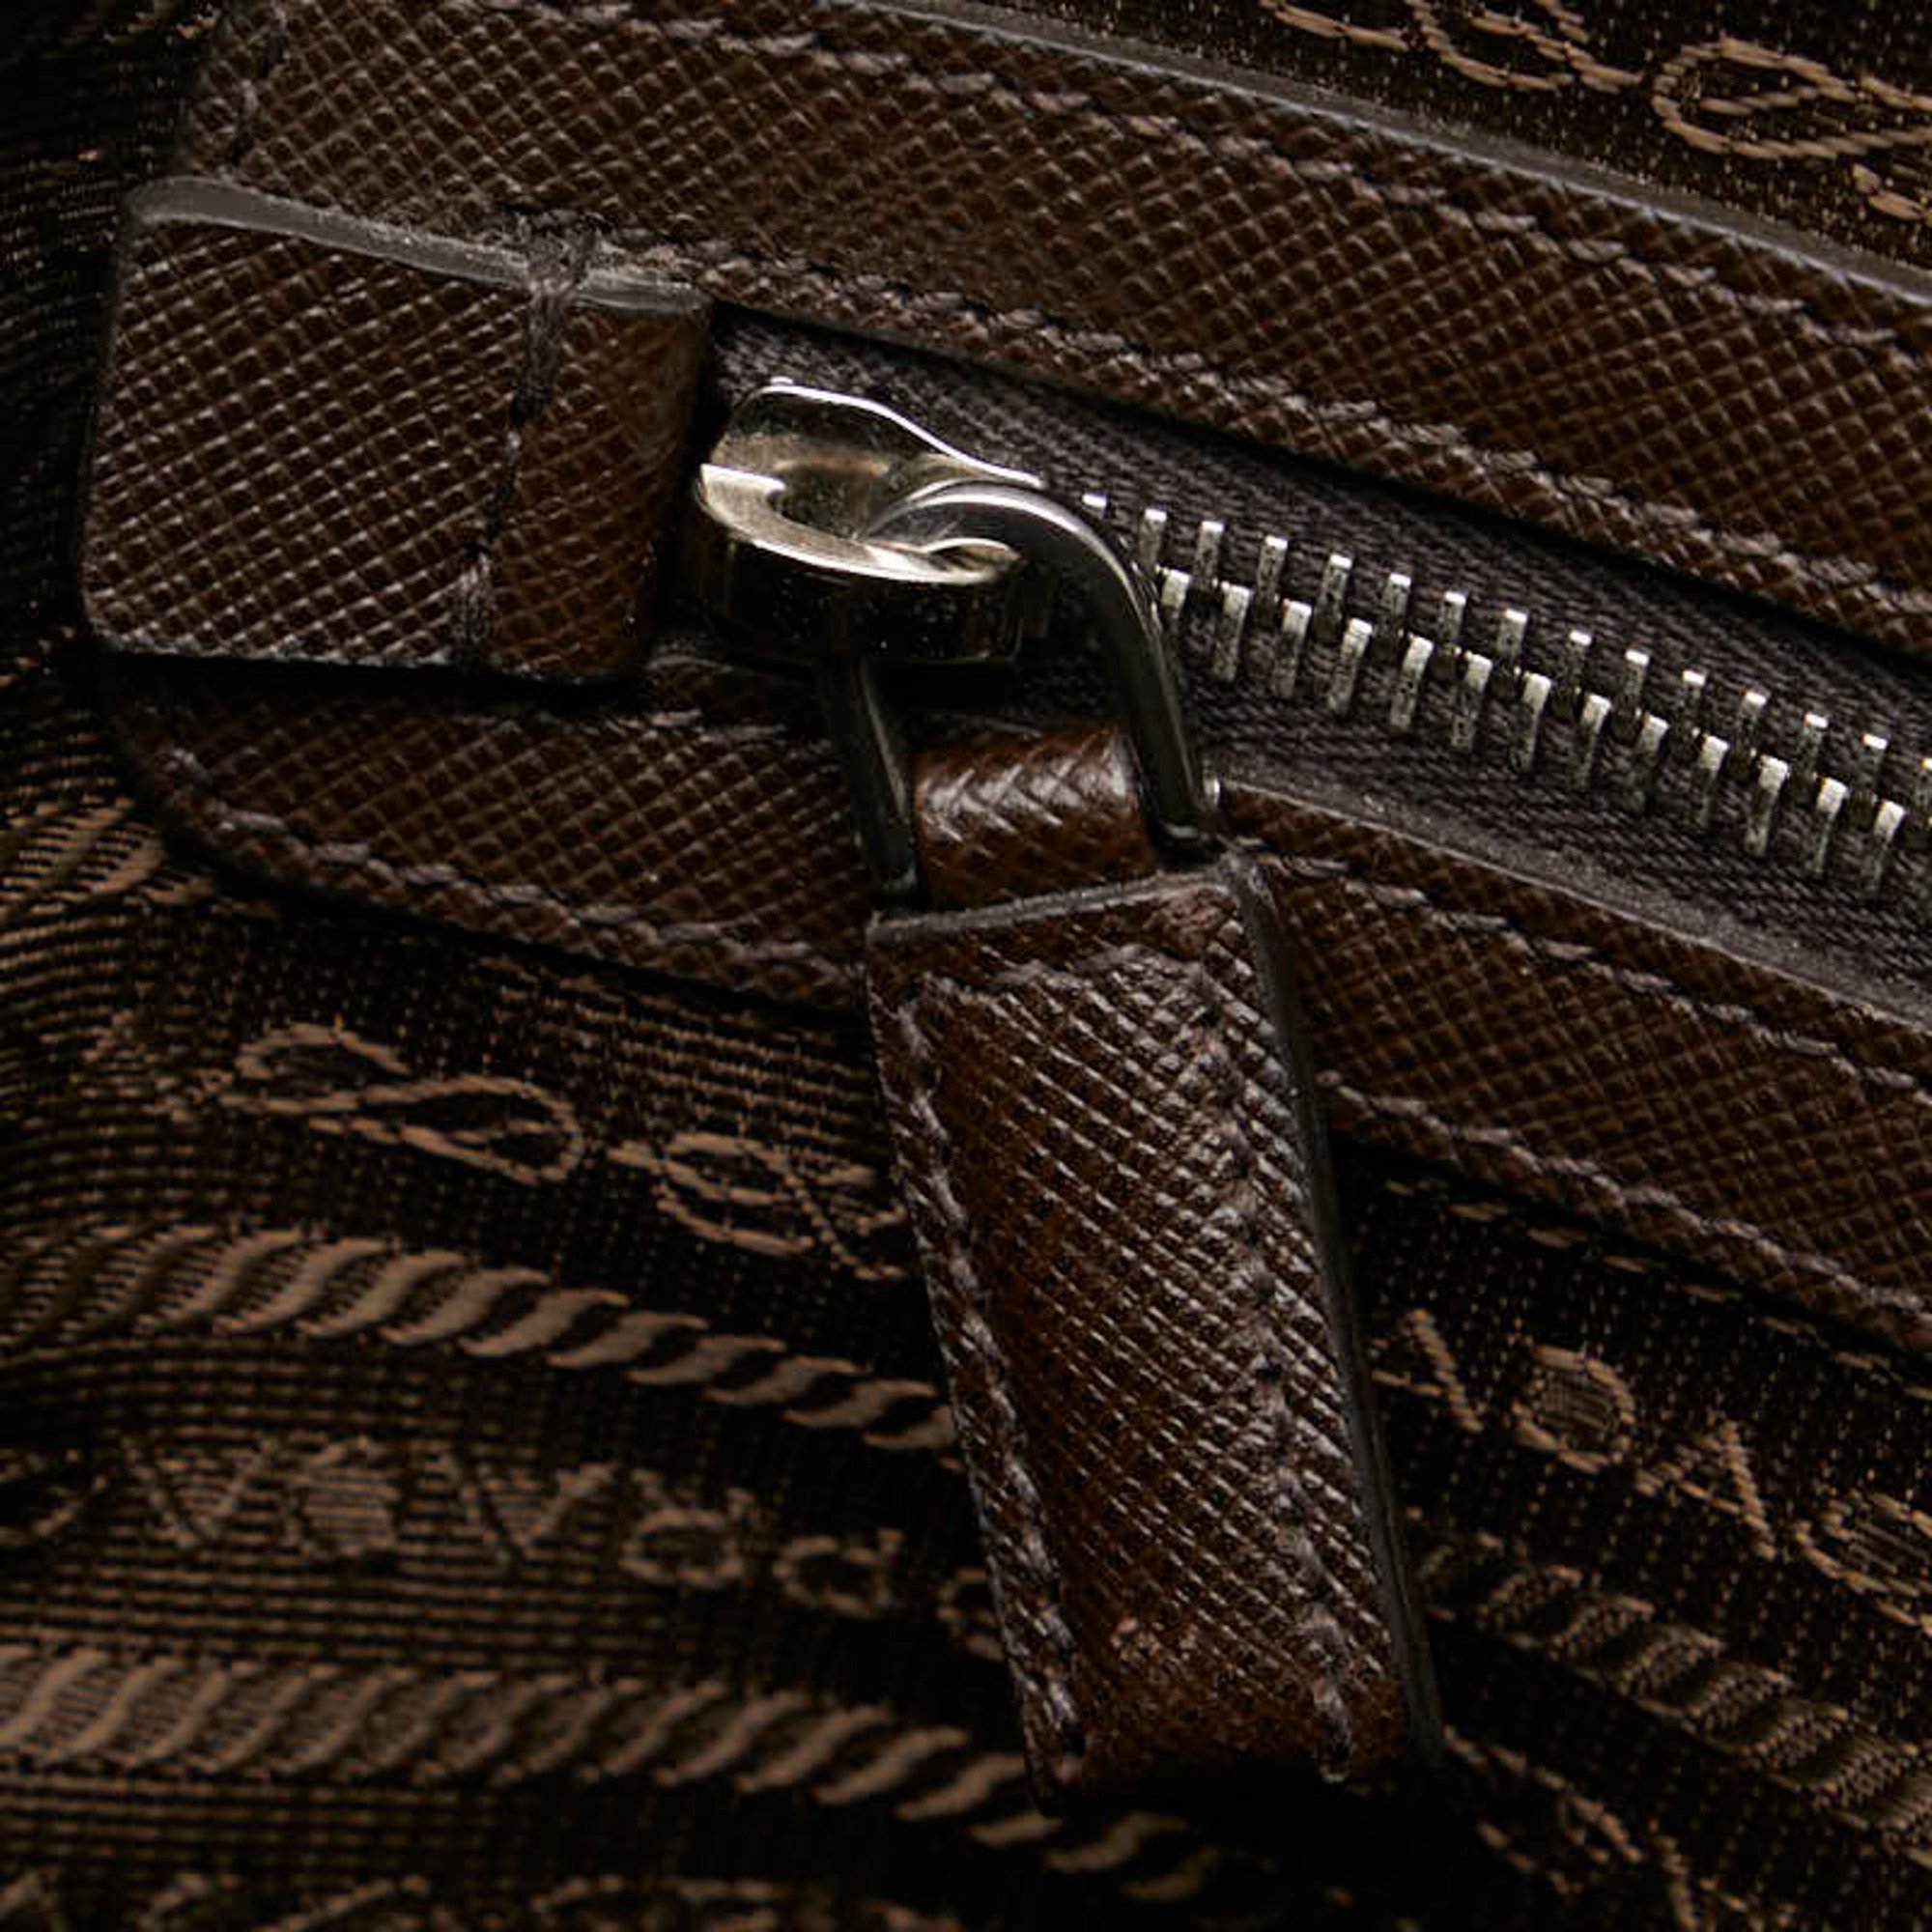 Prada Triangle Plate Handbag Shoulder Bag 2VE368 White Silver Leather Women's PRADA